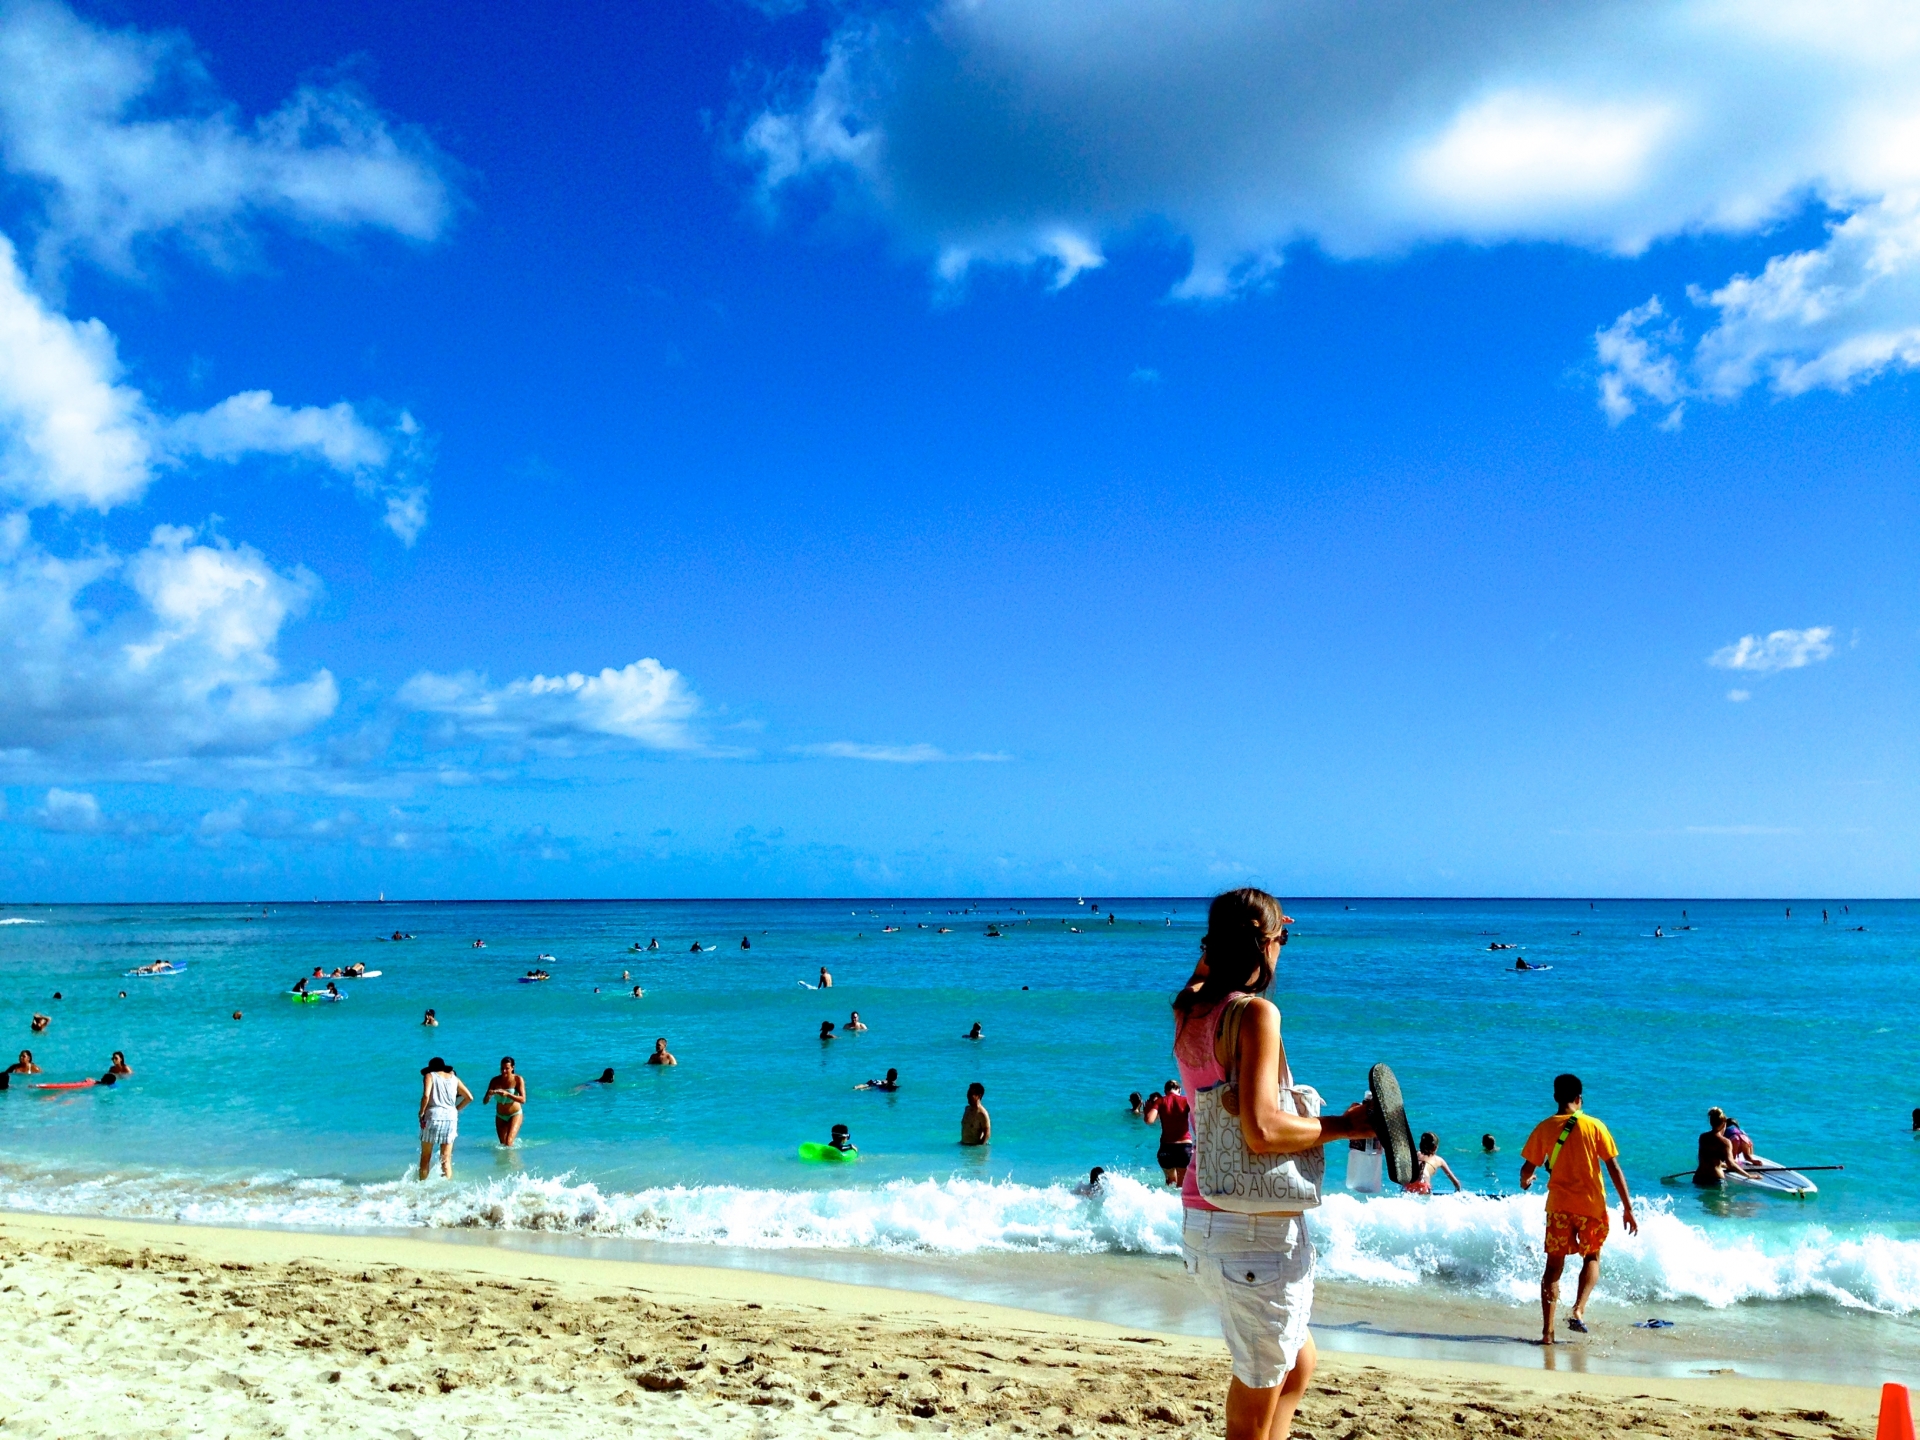 ハワイのビーチで楽しむために「貴重品」の保管について